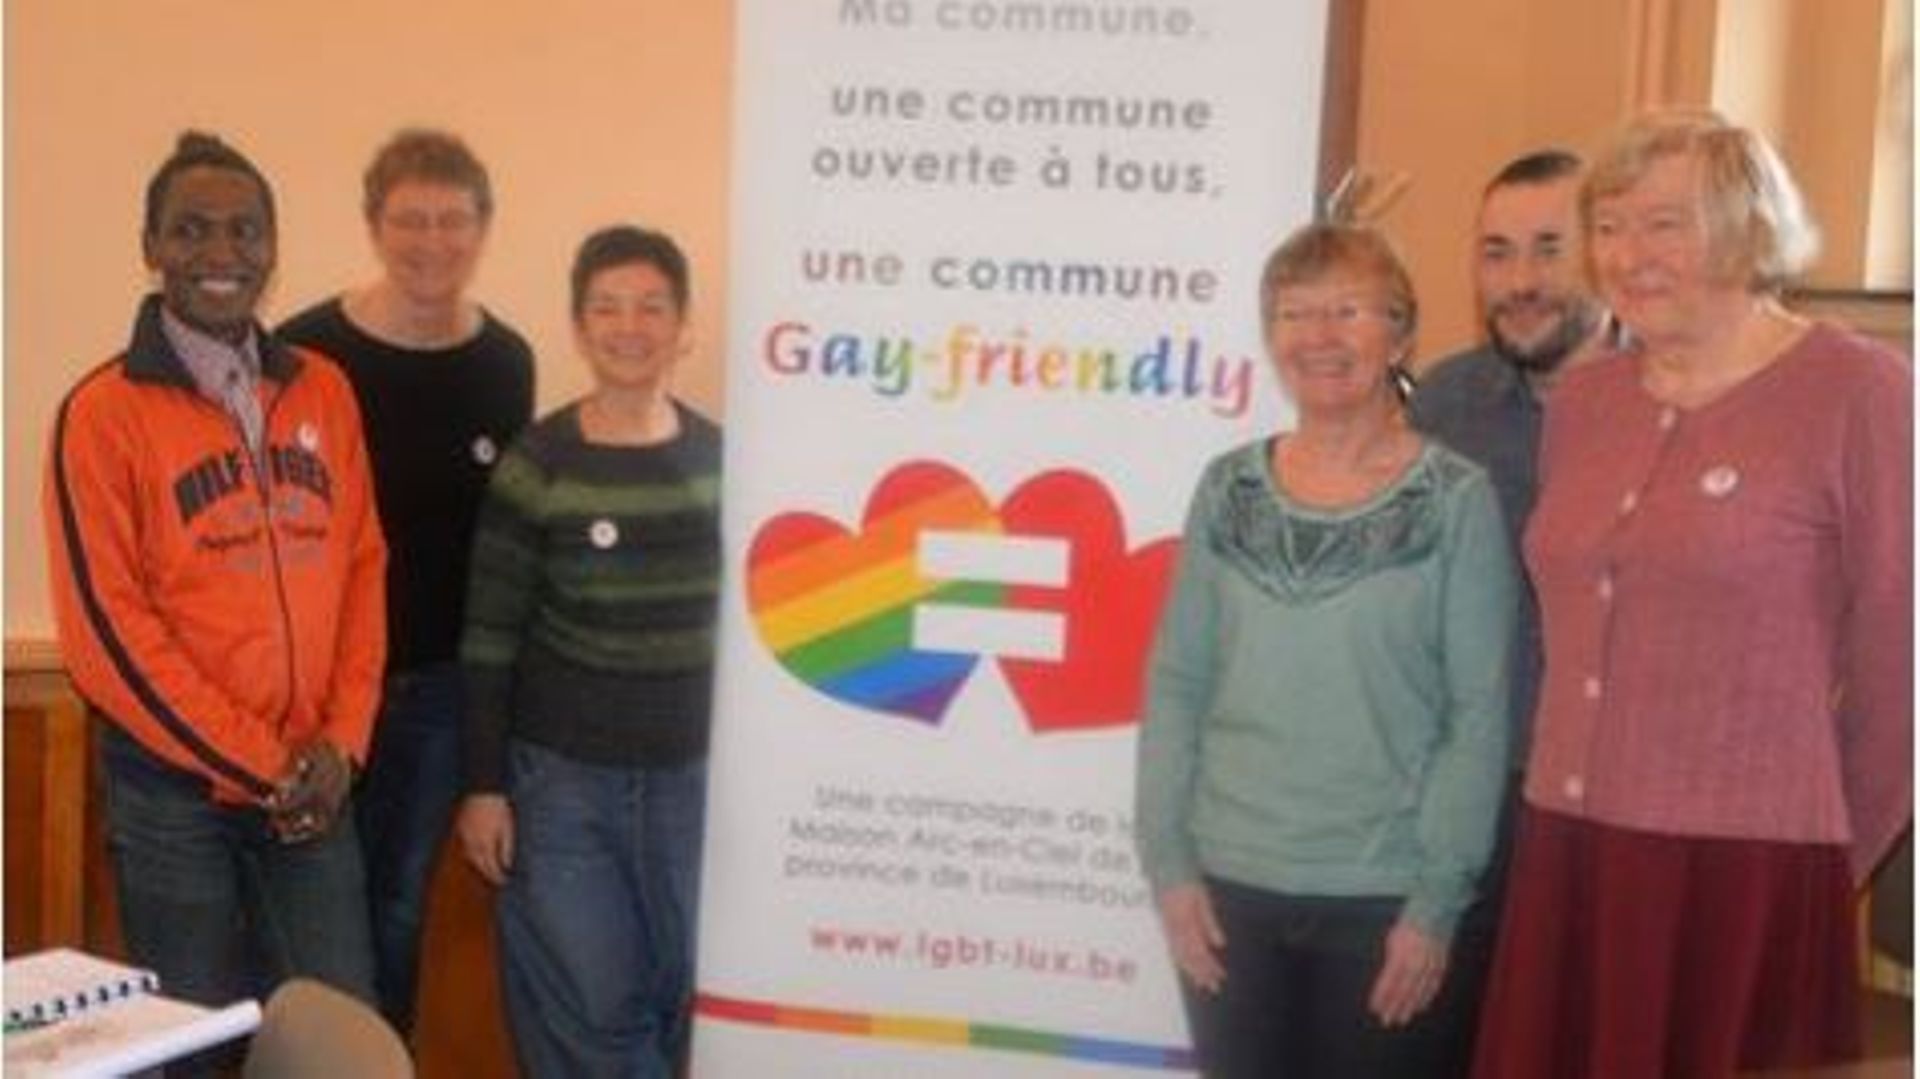 En janvier 2016, la Maison Arc-en-Ciel du Luxembourg a lancé la campagne «Ma commune, une commune ouverte à tous, une commune gay-friendly».